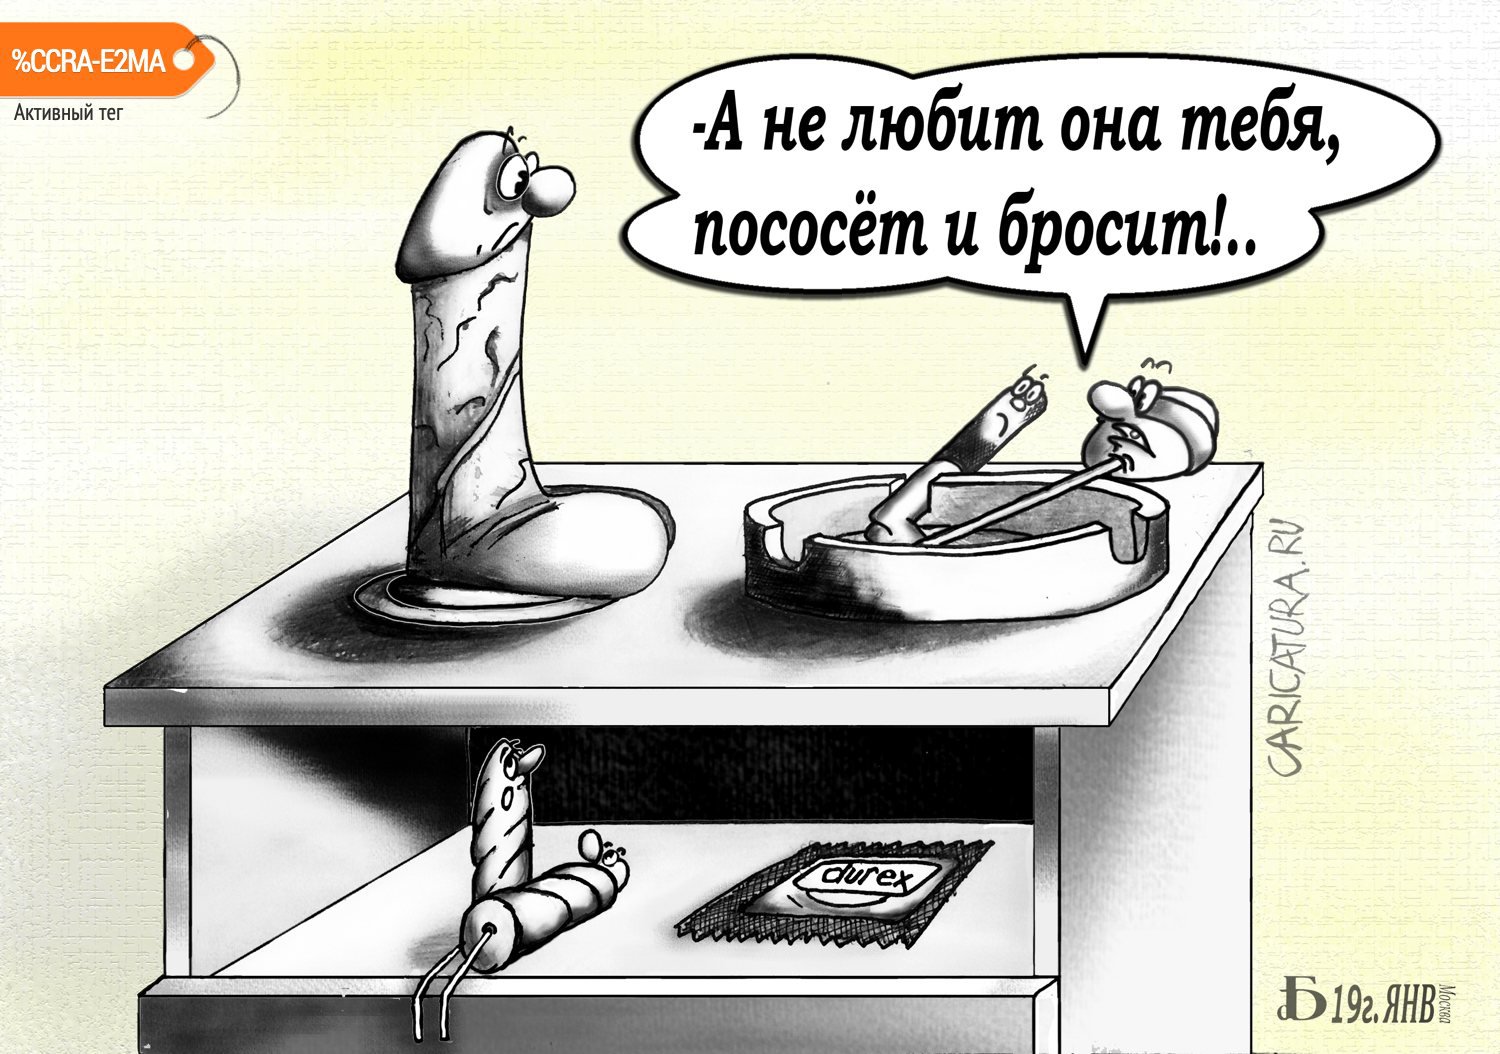 Карикатура "Про чупа-чупс", Борис Демин